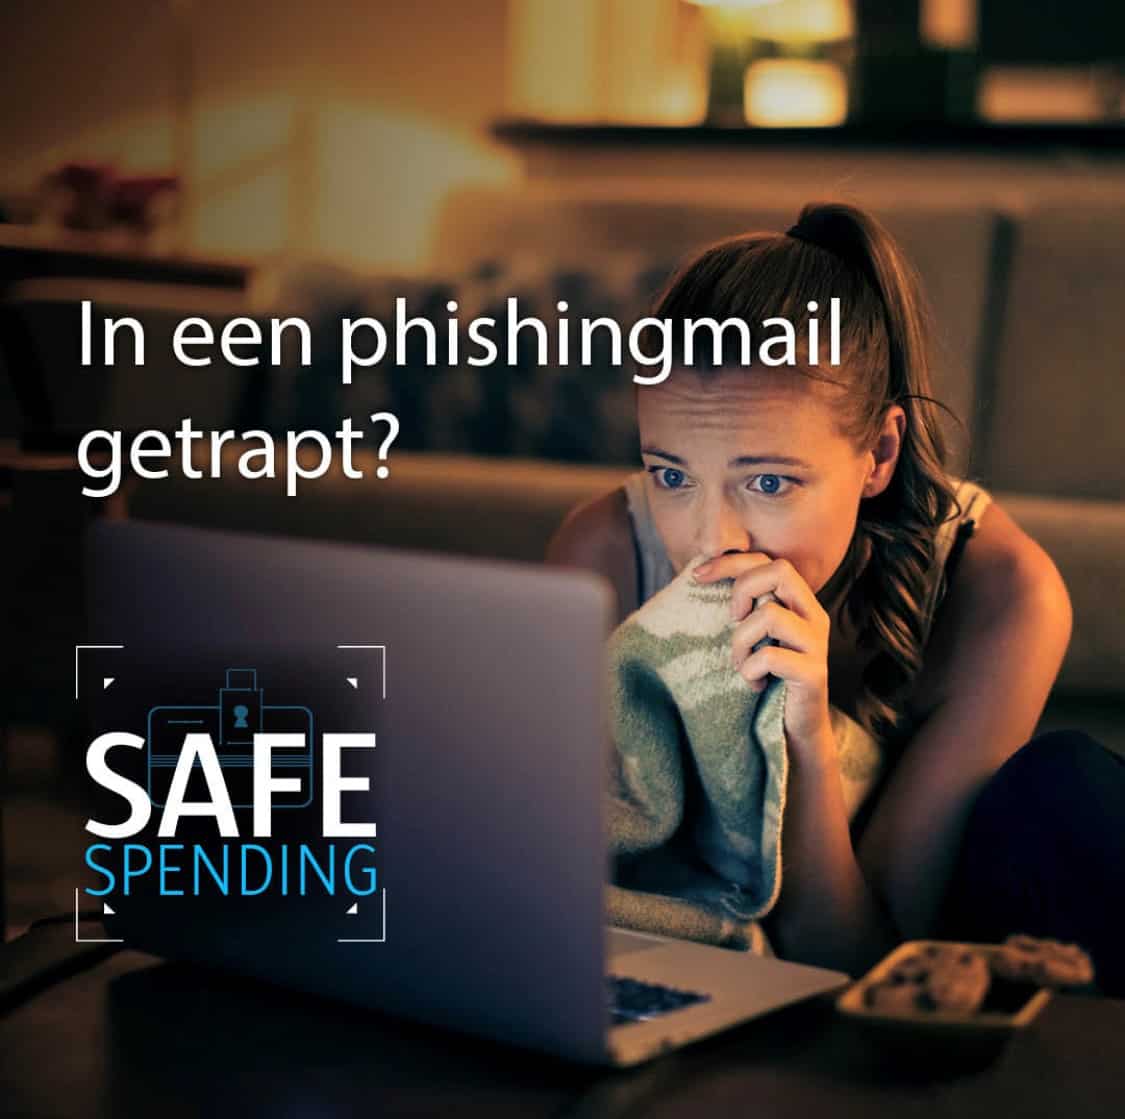   08-04-2021 Post: Wat als je in een phishingmail trapt?  